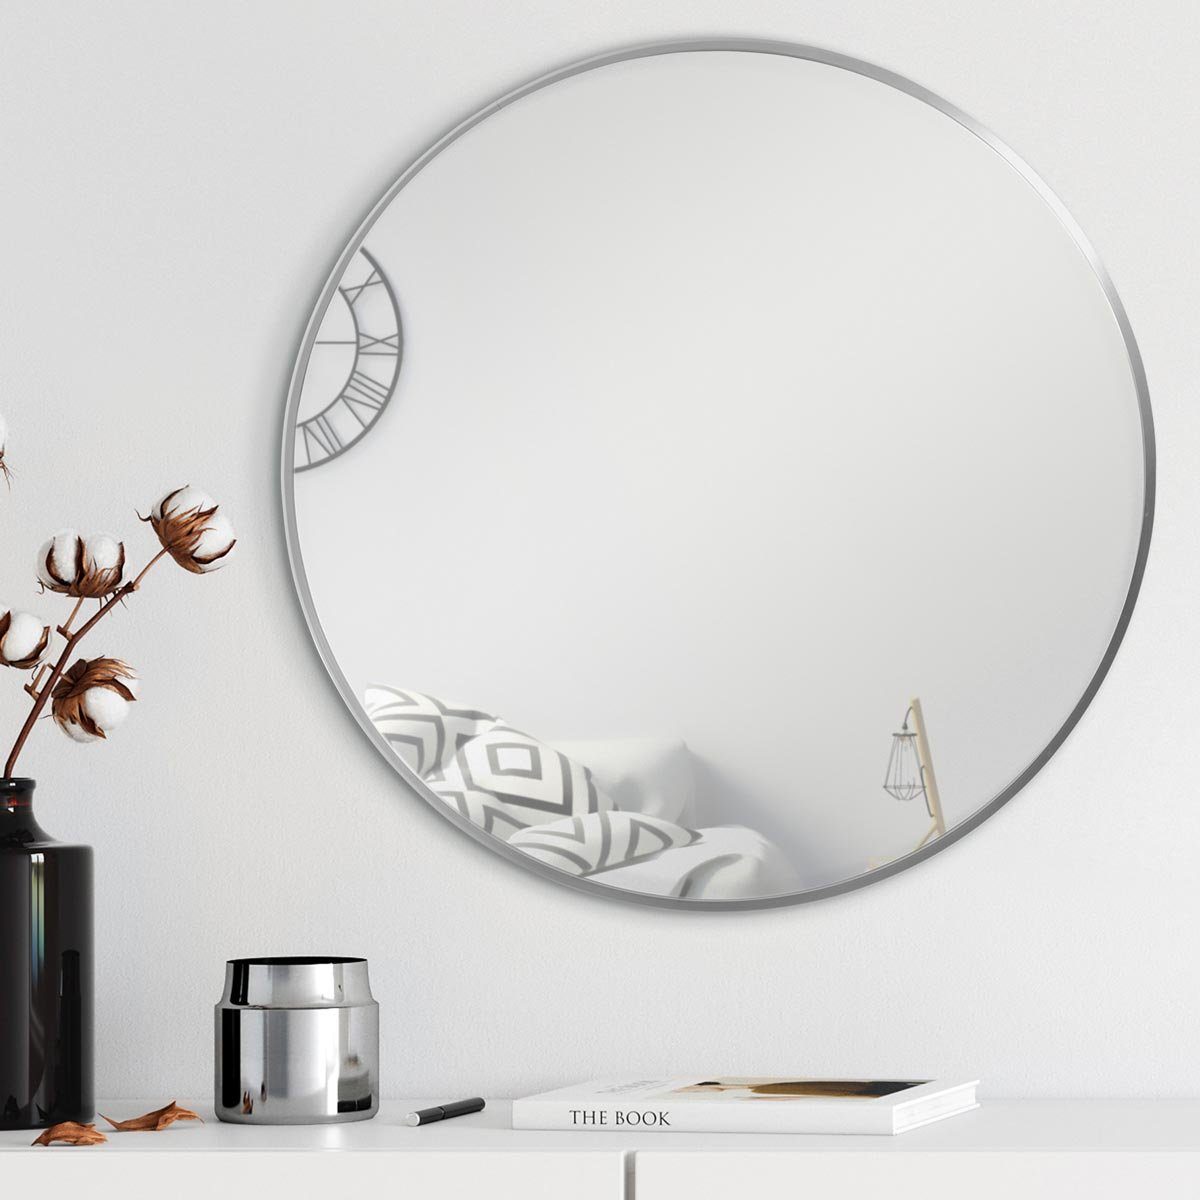 PHOTOLINI Spiegel rund mit Metallrahmen eleganter schmaler Silber, Wandspiegel, Rahmen